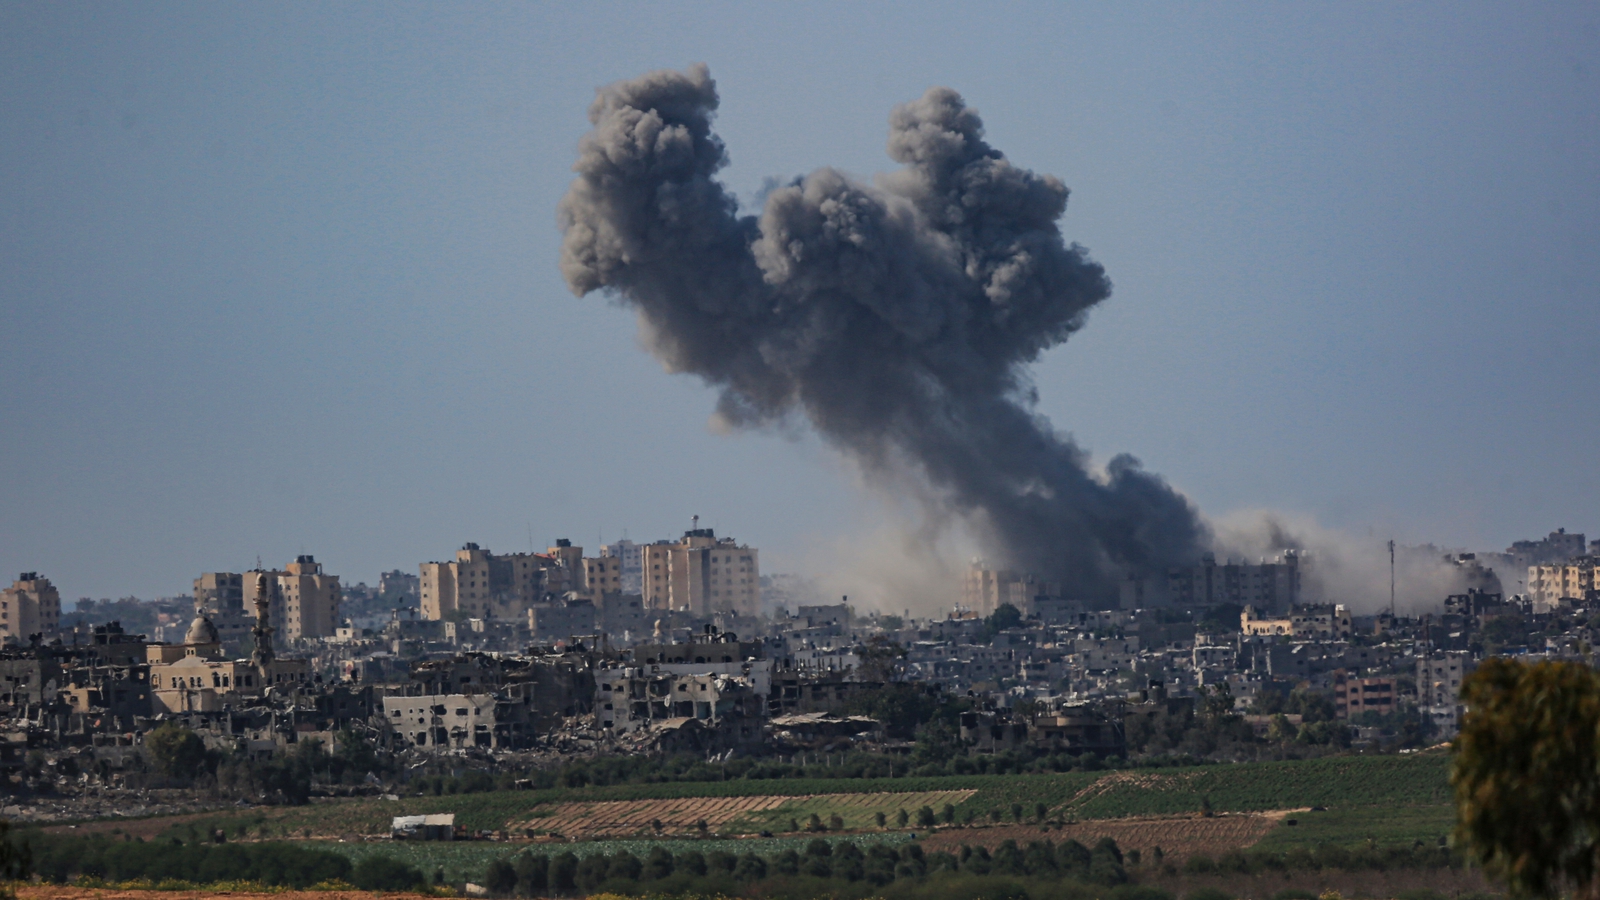 以色列对加沙展开空袭 炮火照亮夜空-搜狐大视野-搜狐新闻